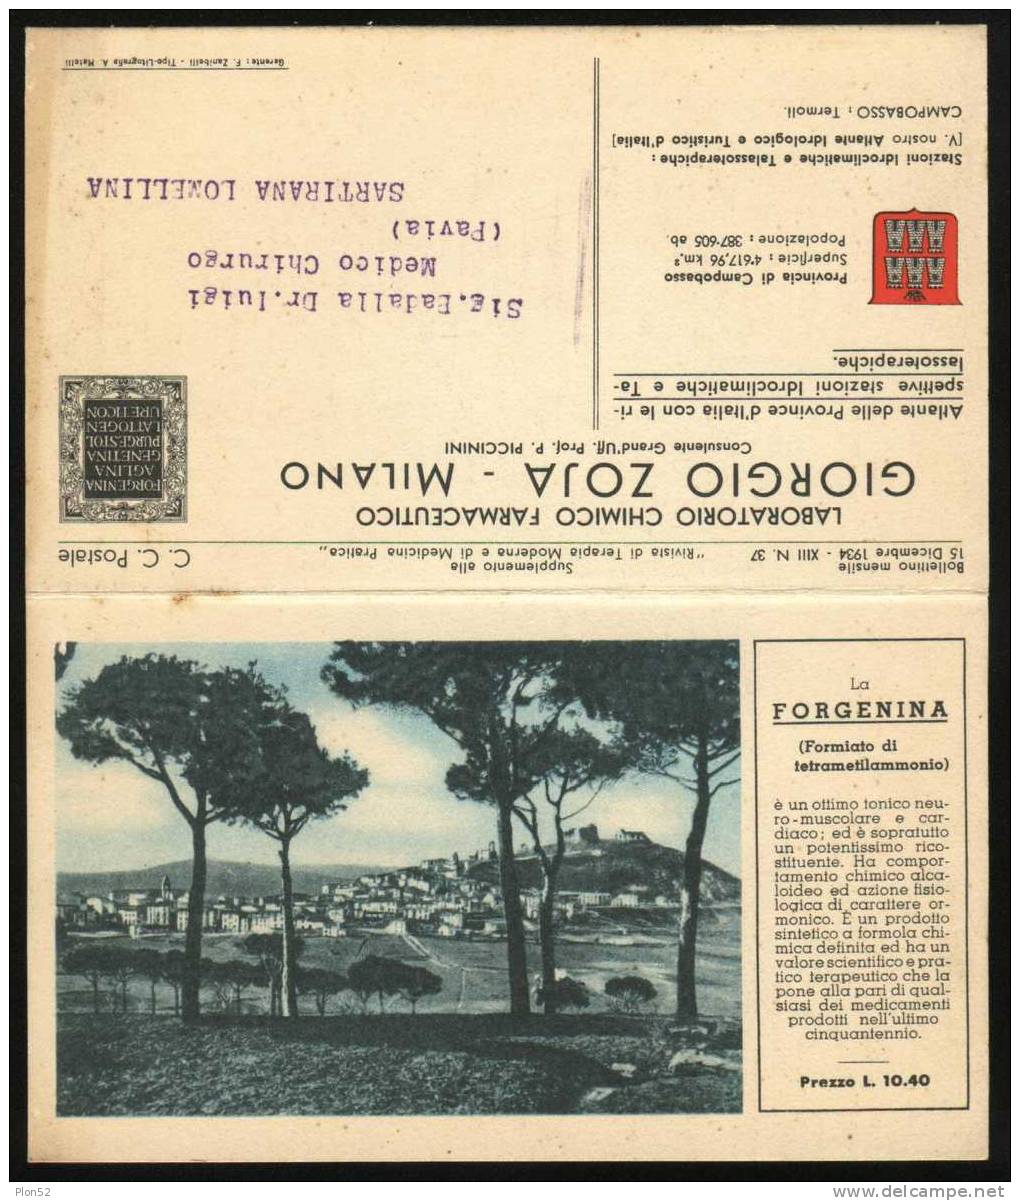 5024-CAMPOBASSO-ISERNIA-CARTINA DELLE PROVINCE-PUBBLICITA´ MEDICINALI-1934 - Isernia